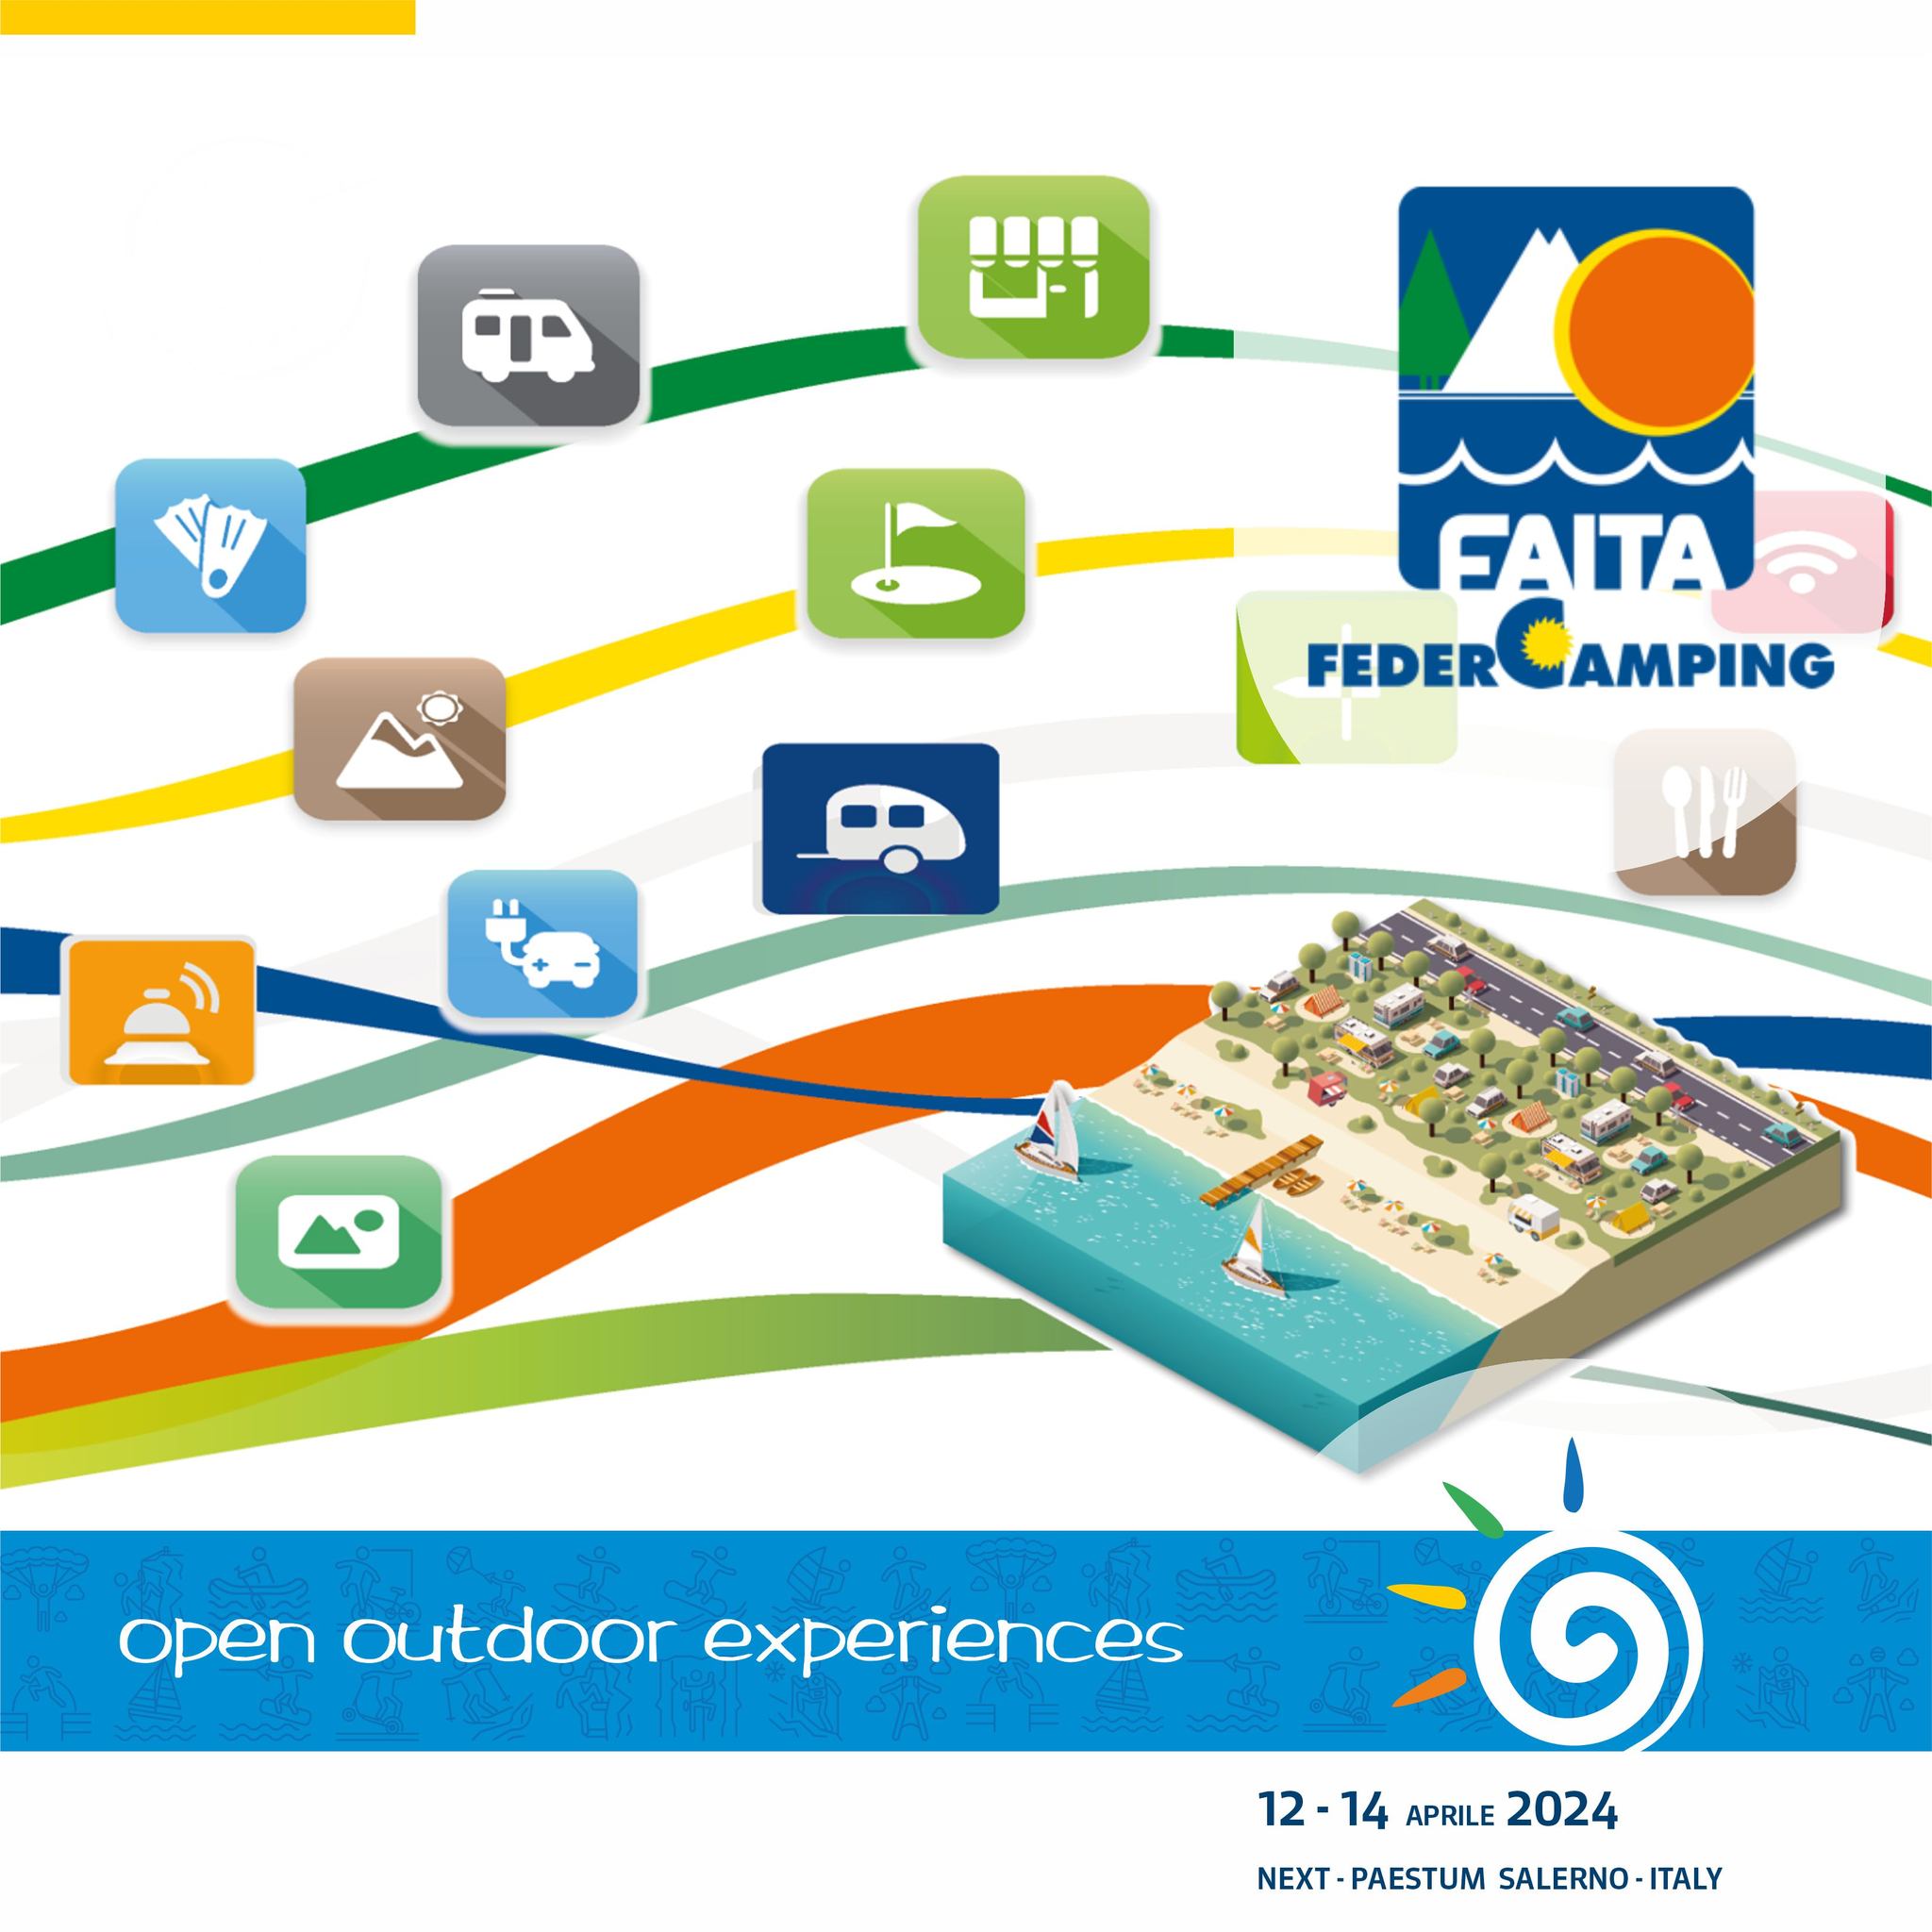 Open 2024 si arricchisce della collaborazione della FAITA-Feder Camping Campania – Federazione delle associazioni Italiane dei complessi turistico ricettivi all’aria aperta